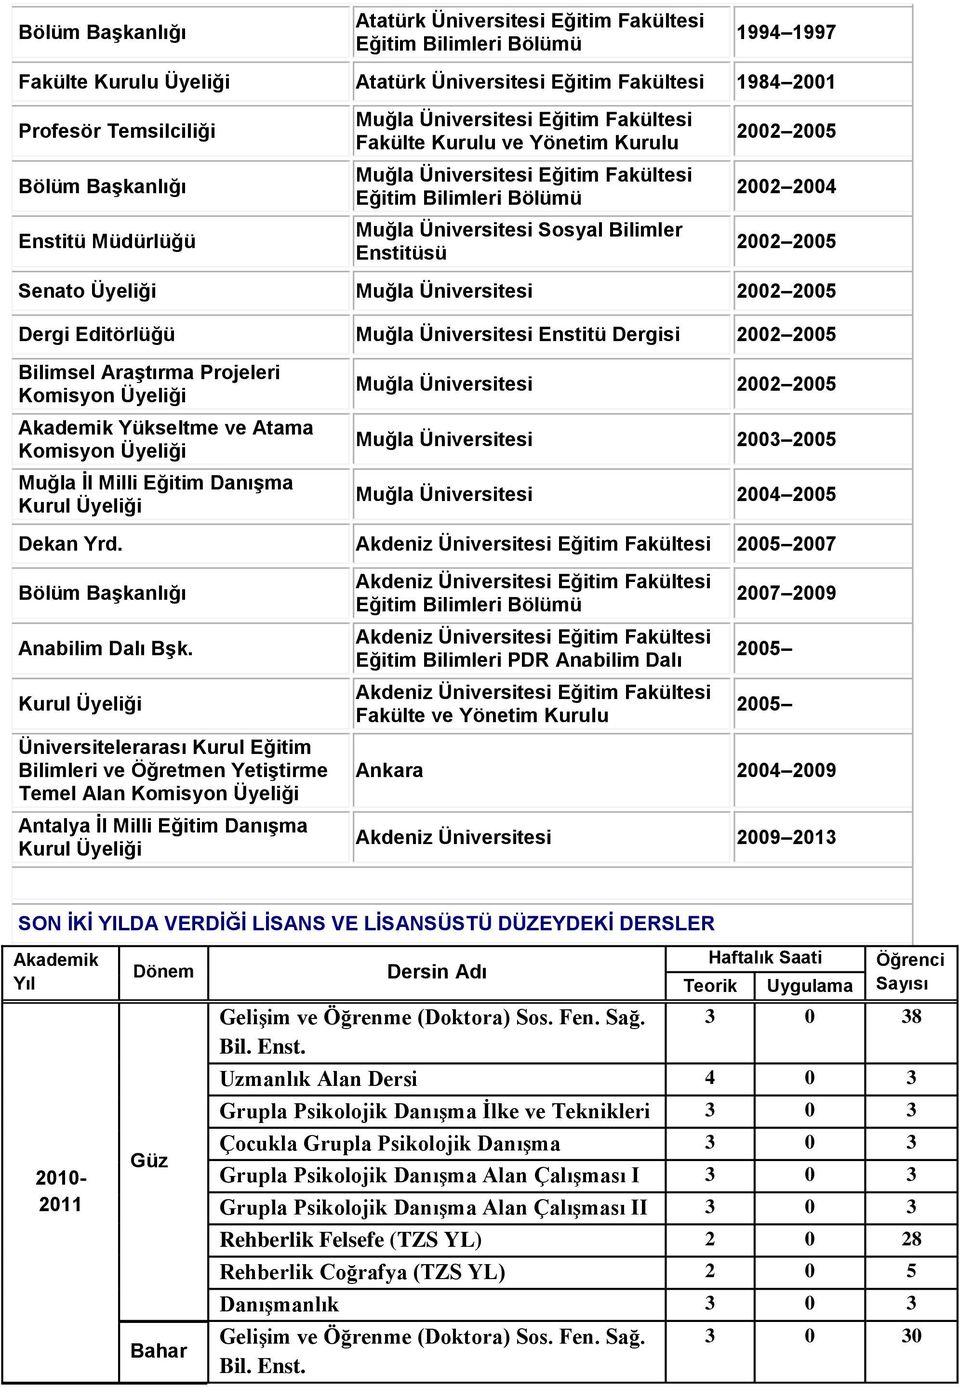 Muğla Üniversitesi Enstitü Dergisi 2002 2005 Bilimsel Araştırma Projeleri Komisyon Üyeliği Akademik Yükseltme ve Atama Komisyon Üyeliği Muğla İl Milli Eğitim Danışma Kurul Üyeliği Muğla Üniversitesi